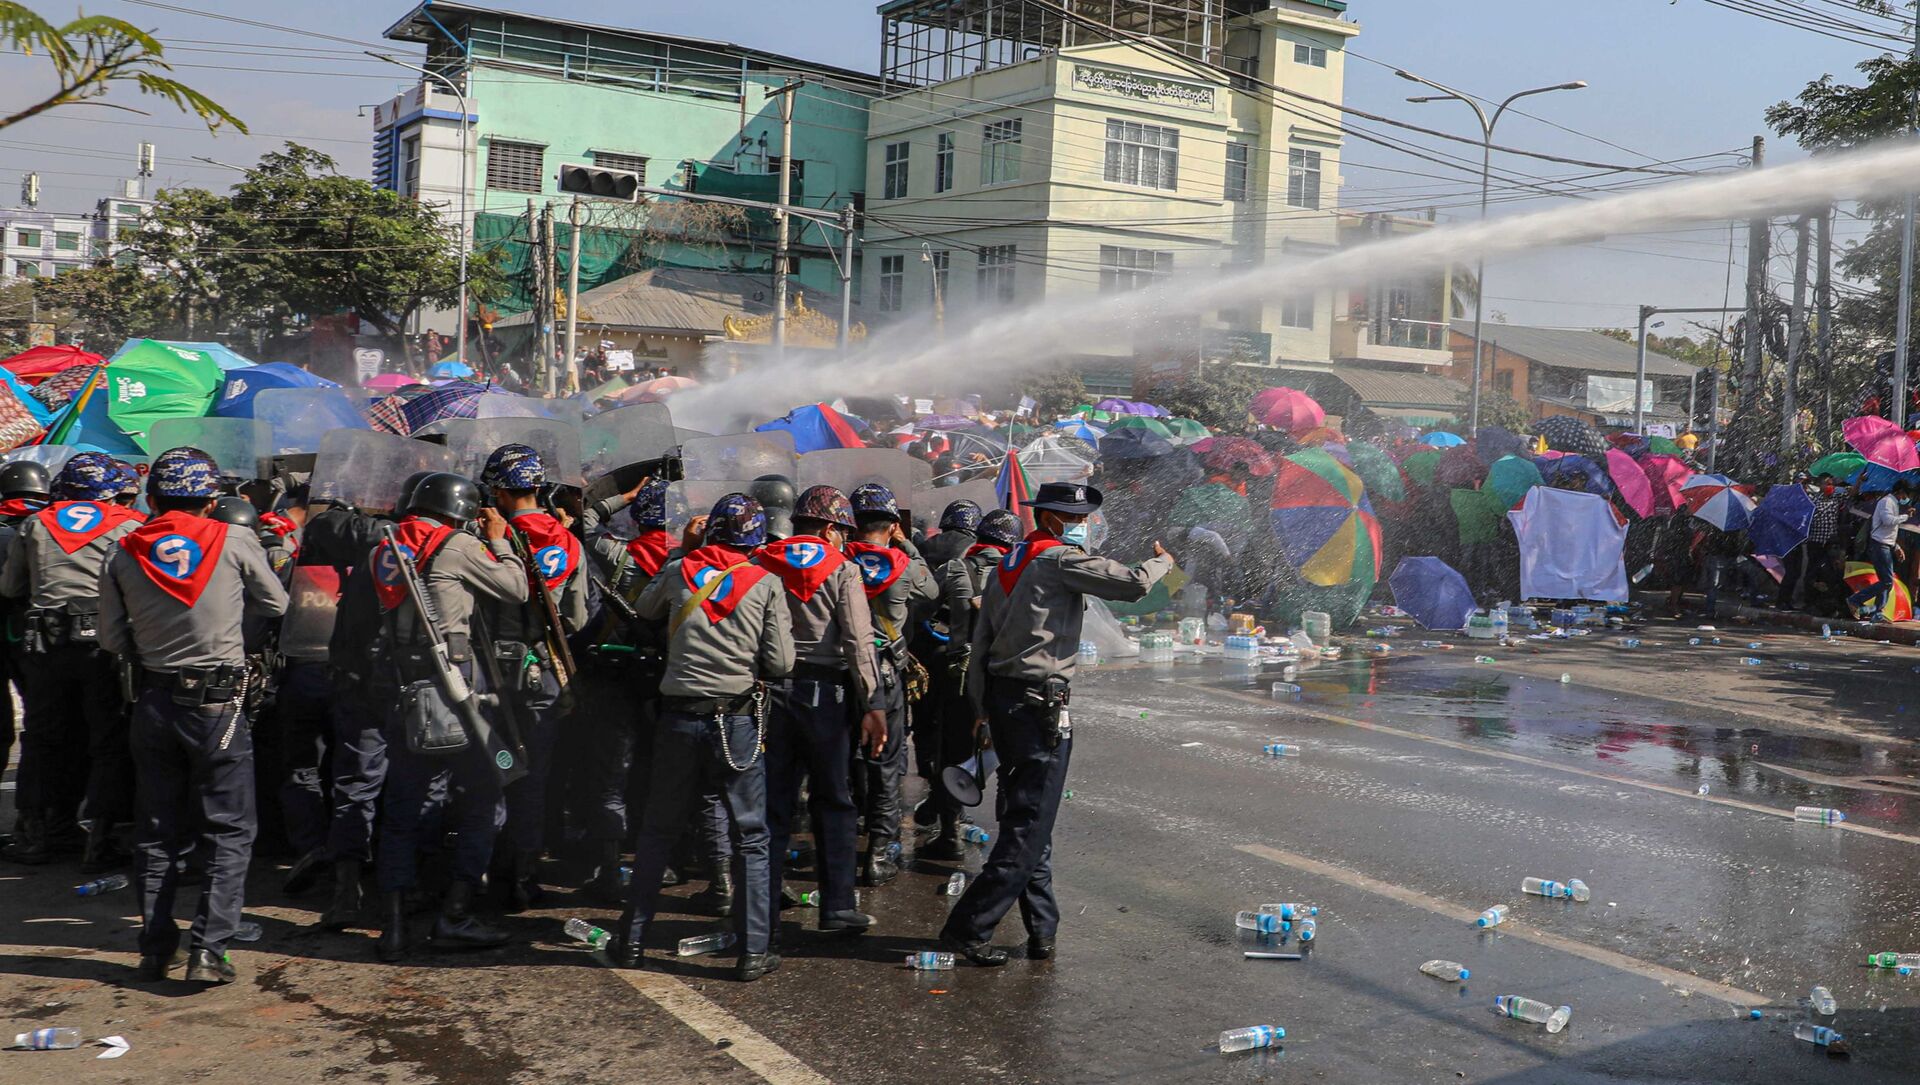  Cảnh sát phun vòi rồng vào người biểu tình trong hoạt động phản đối ở Myanmar. - Sputnik Việt Nam, 1920, 09.02.2021